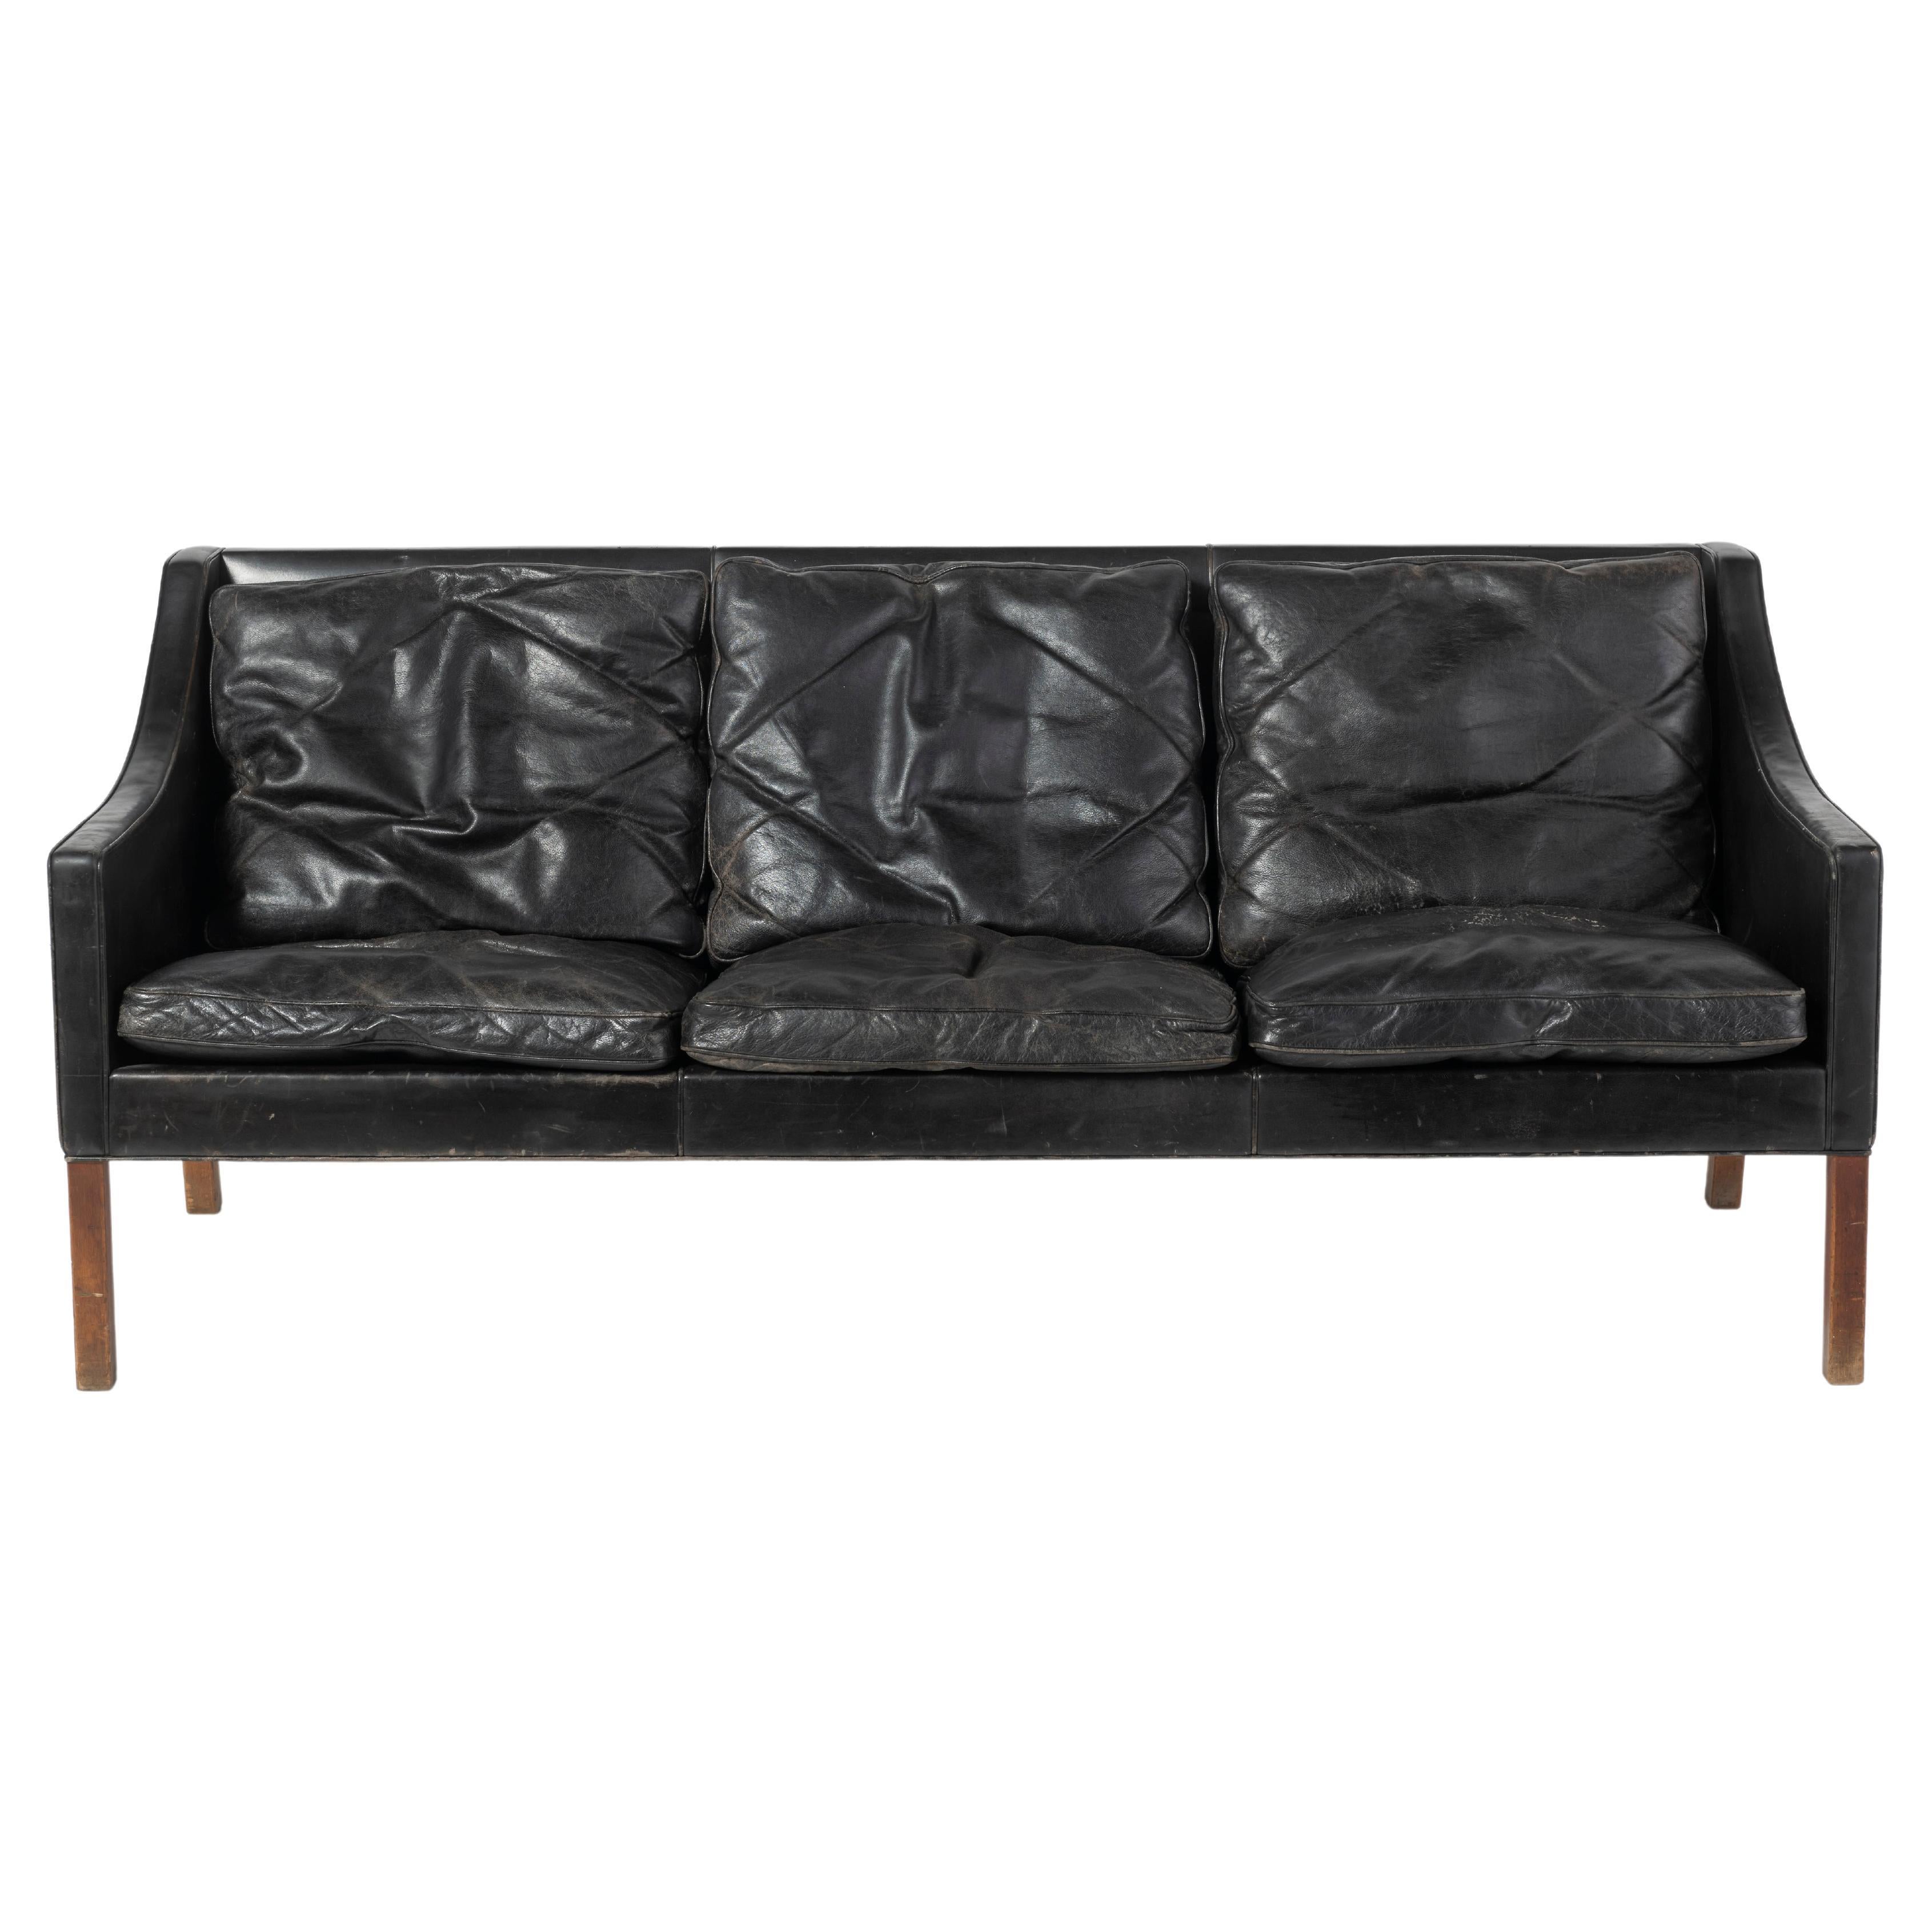 Three-Seat Danish Modern Leather Sofa in Black